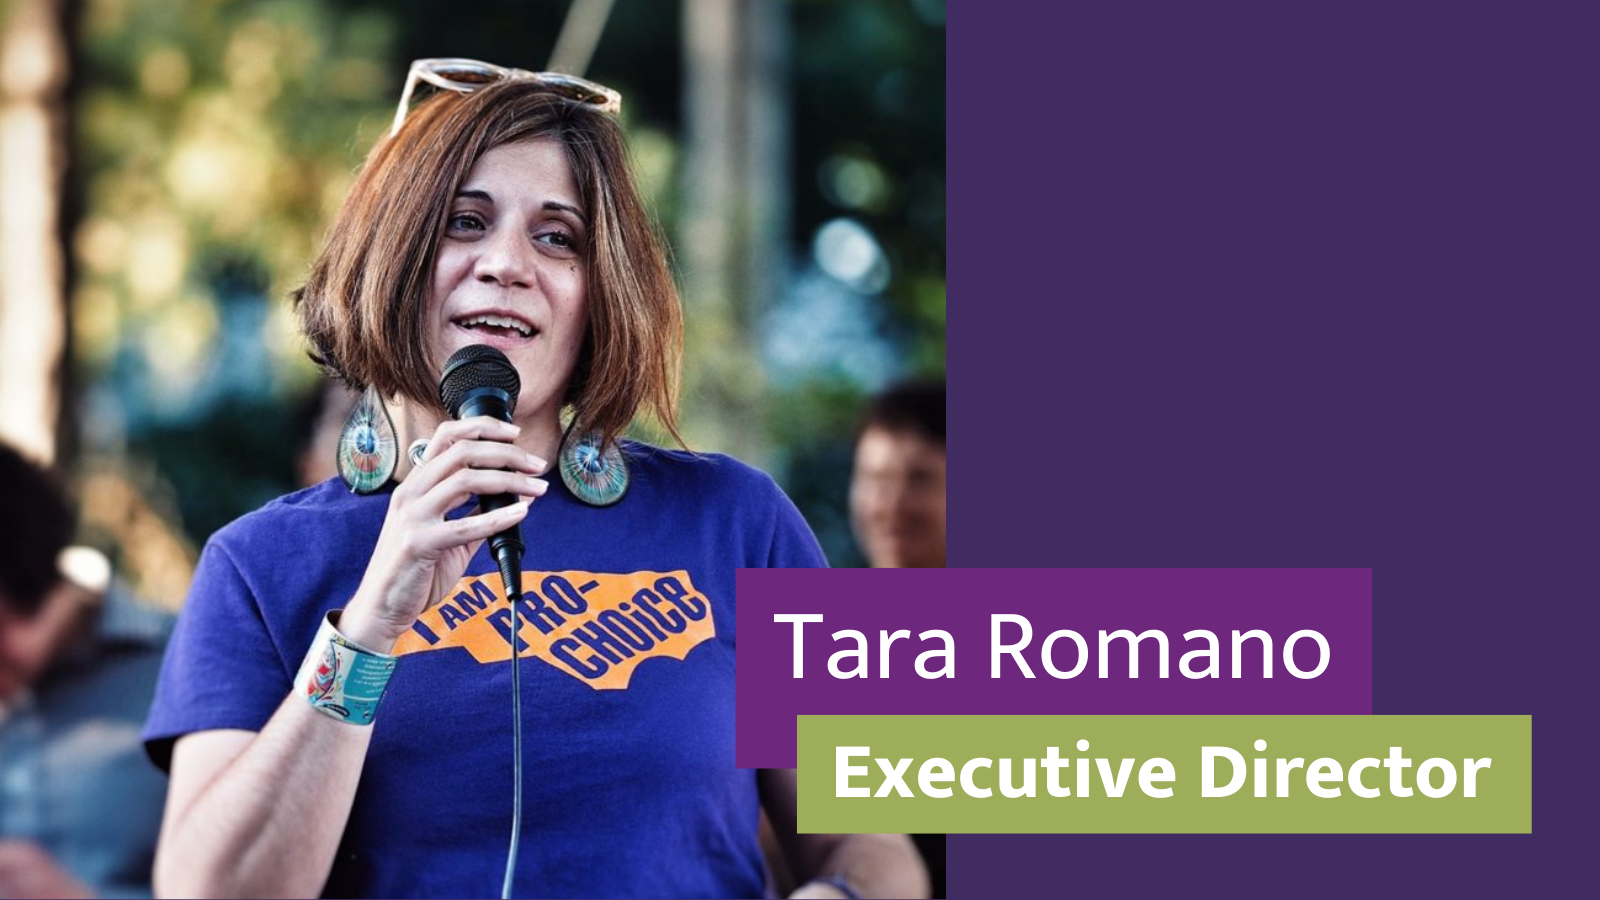 Tara Romano, Executive Director